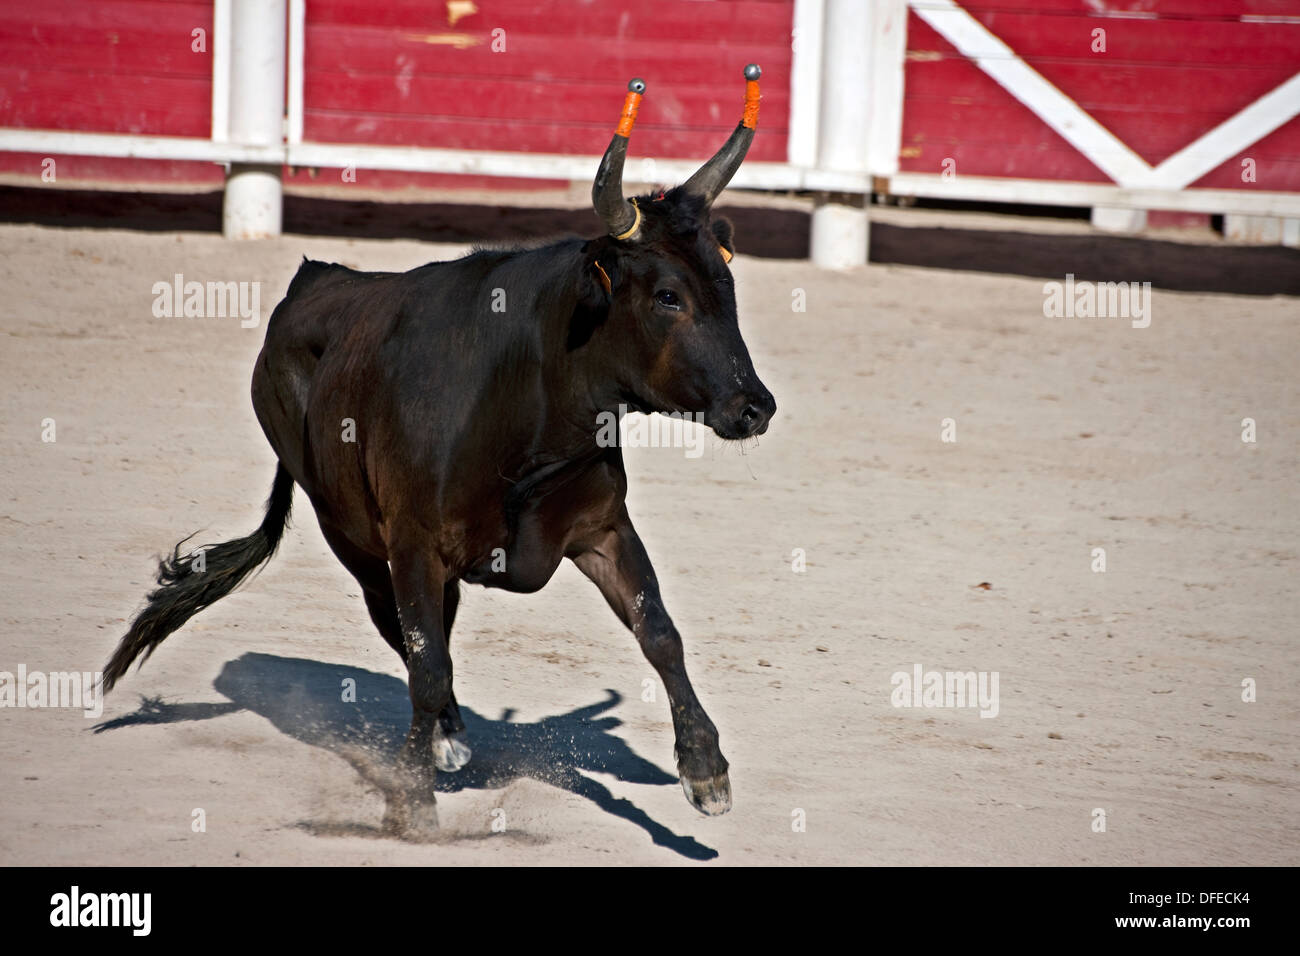 Le Français bull fighting,cours de la Tauromachie Camarguaise,Fontvieille France, Bull à pleine charge,David Photographe de Collingwood Banque D'Images